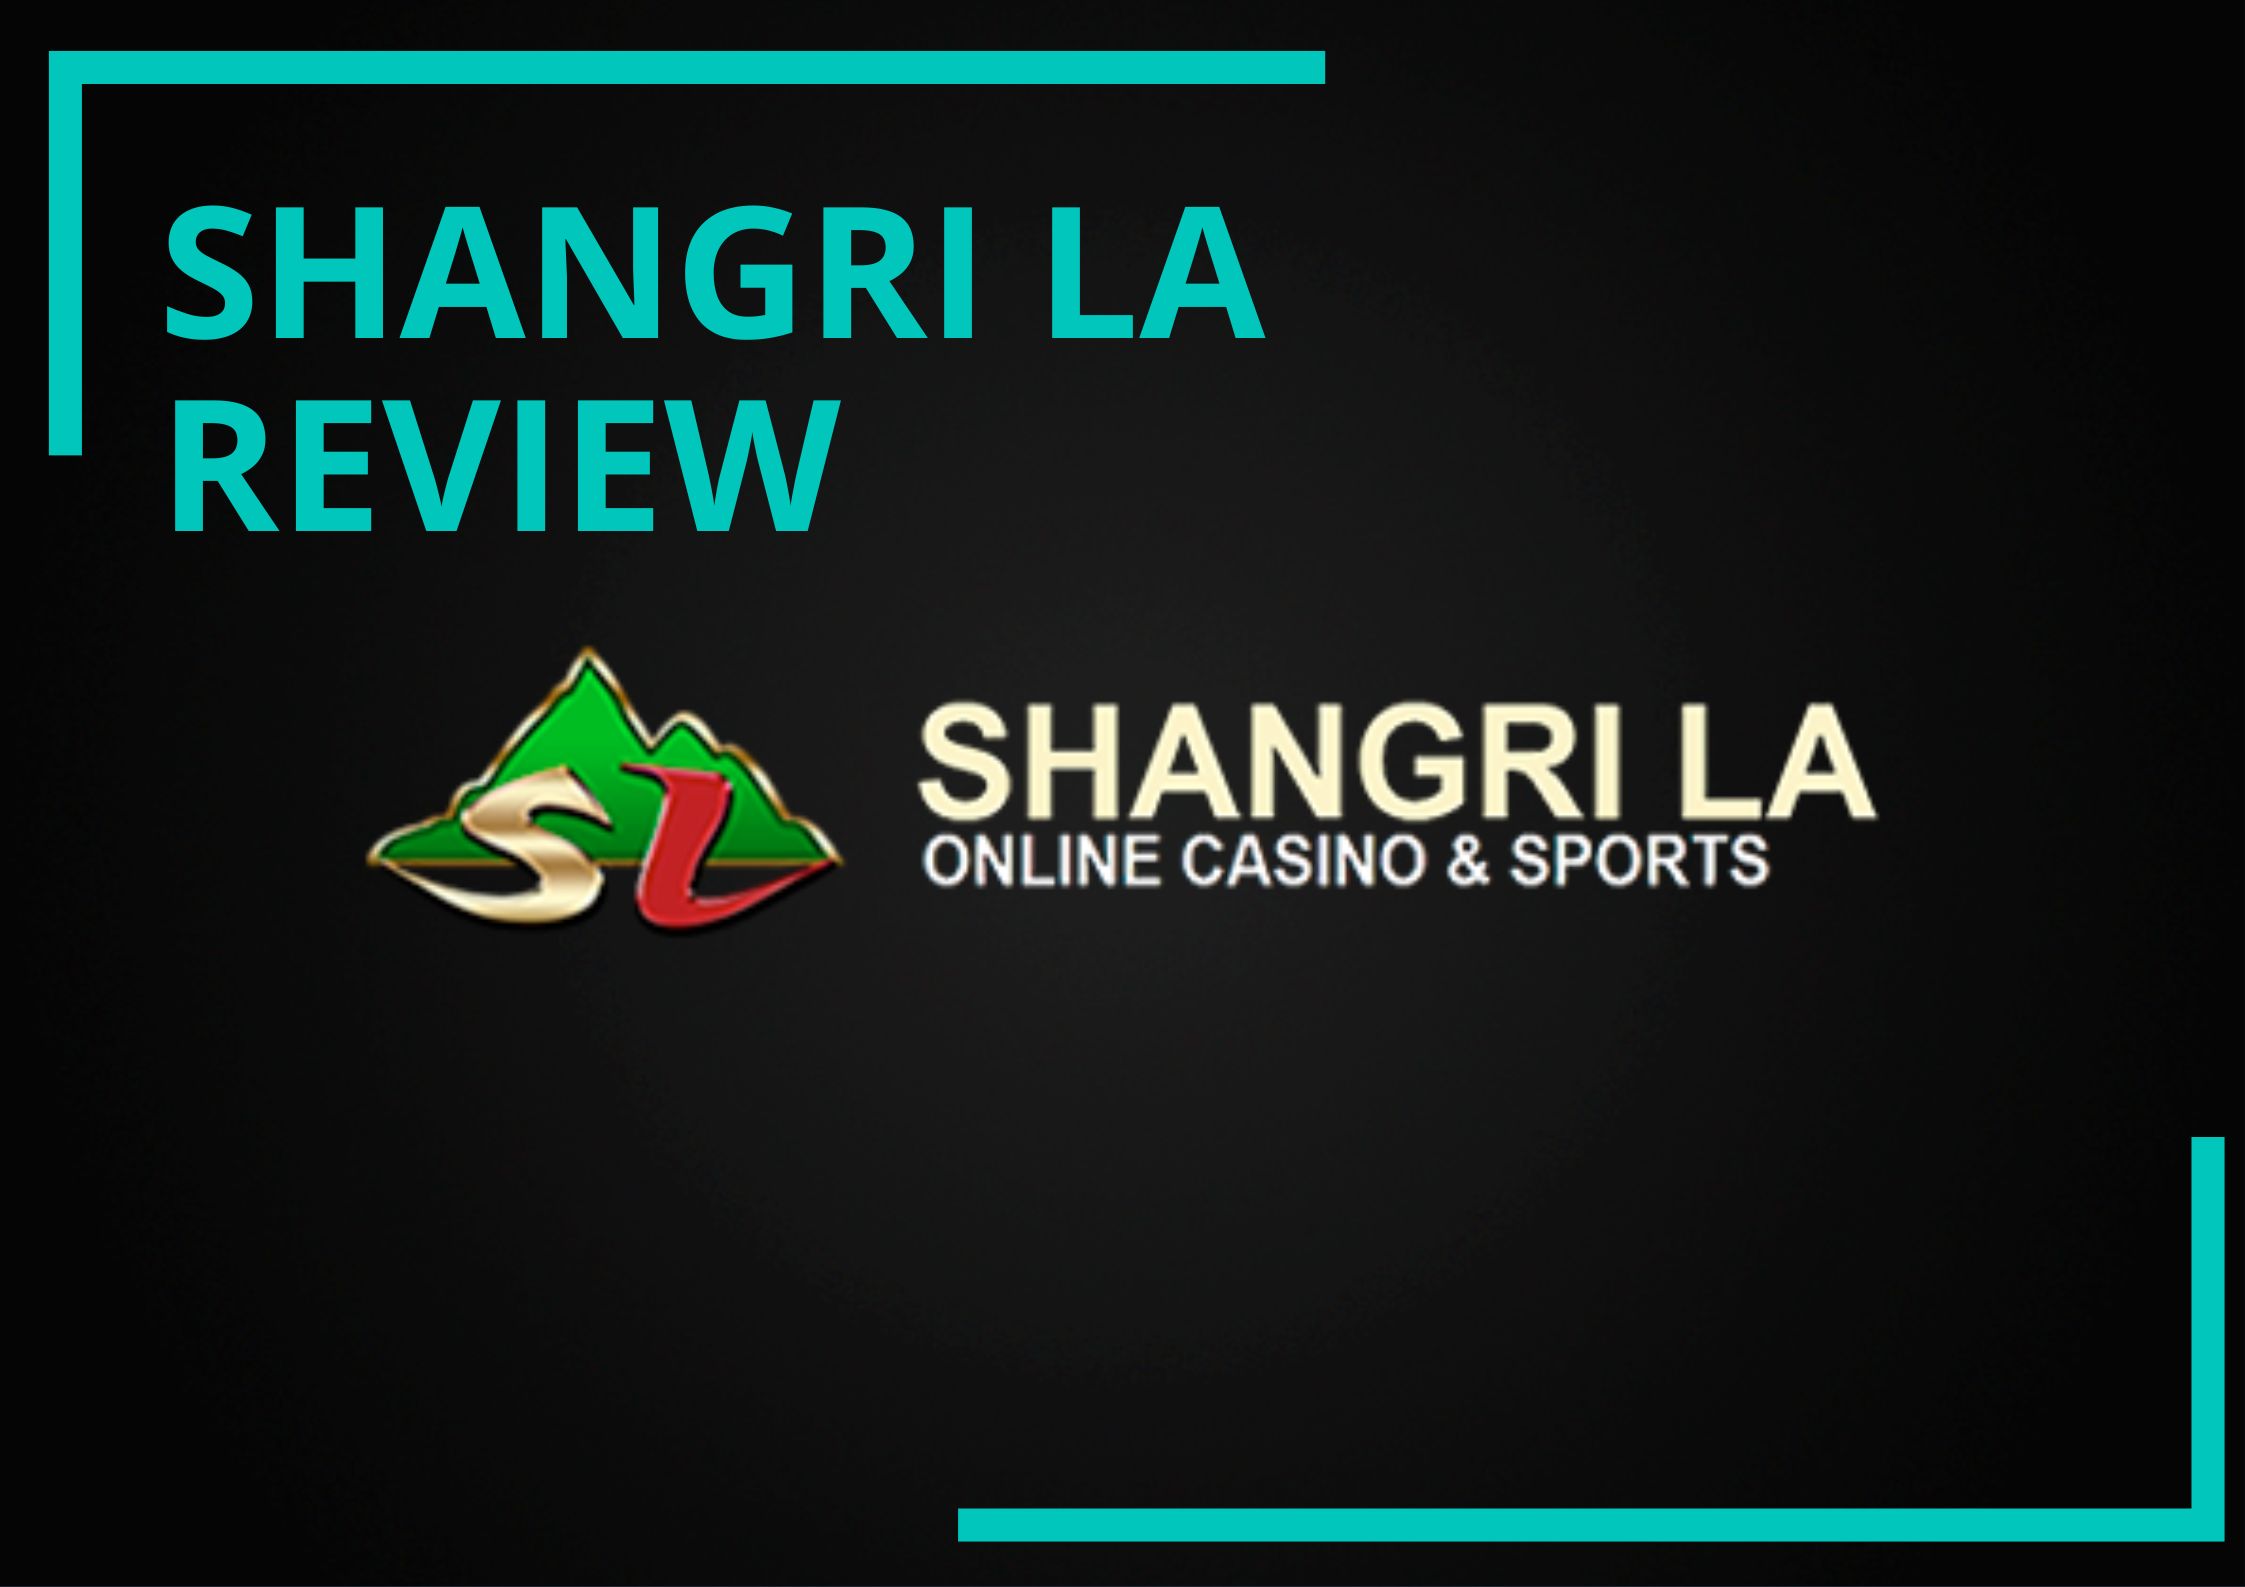 Shangri La Review